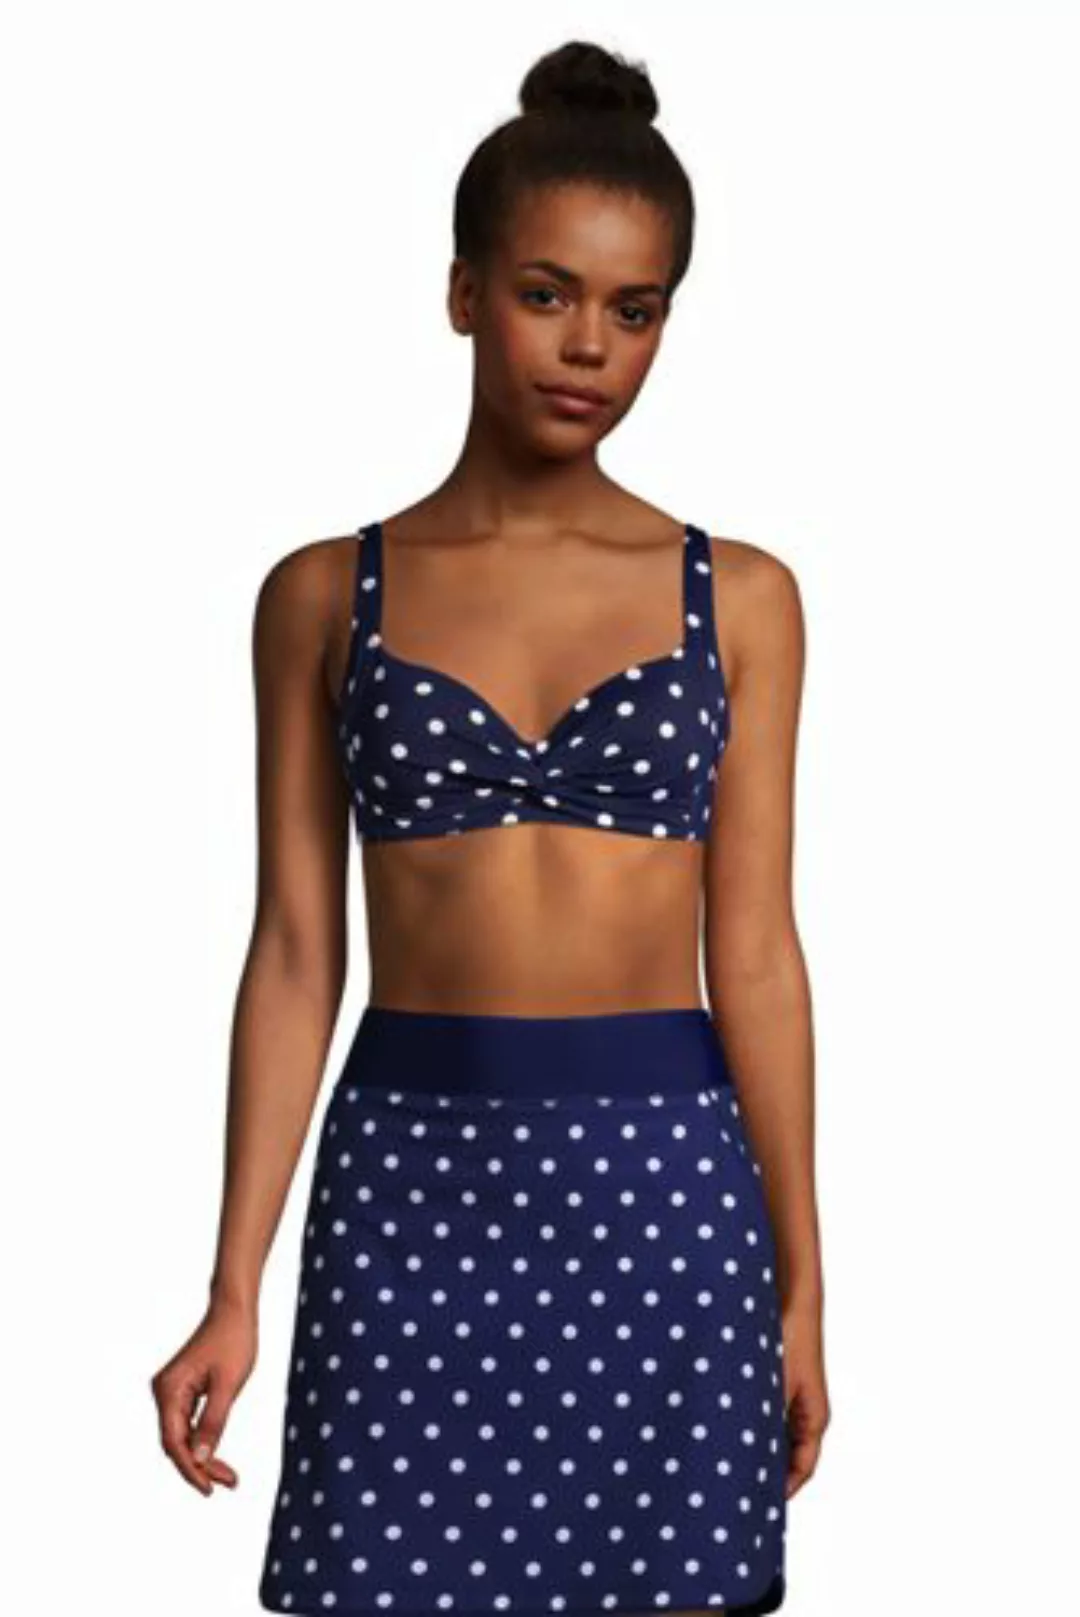 Bikinitop Gemustert CHLORRESISTENT, Damen, Größe: L Normal, Blau, Lycra, by günstig online kaufen